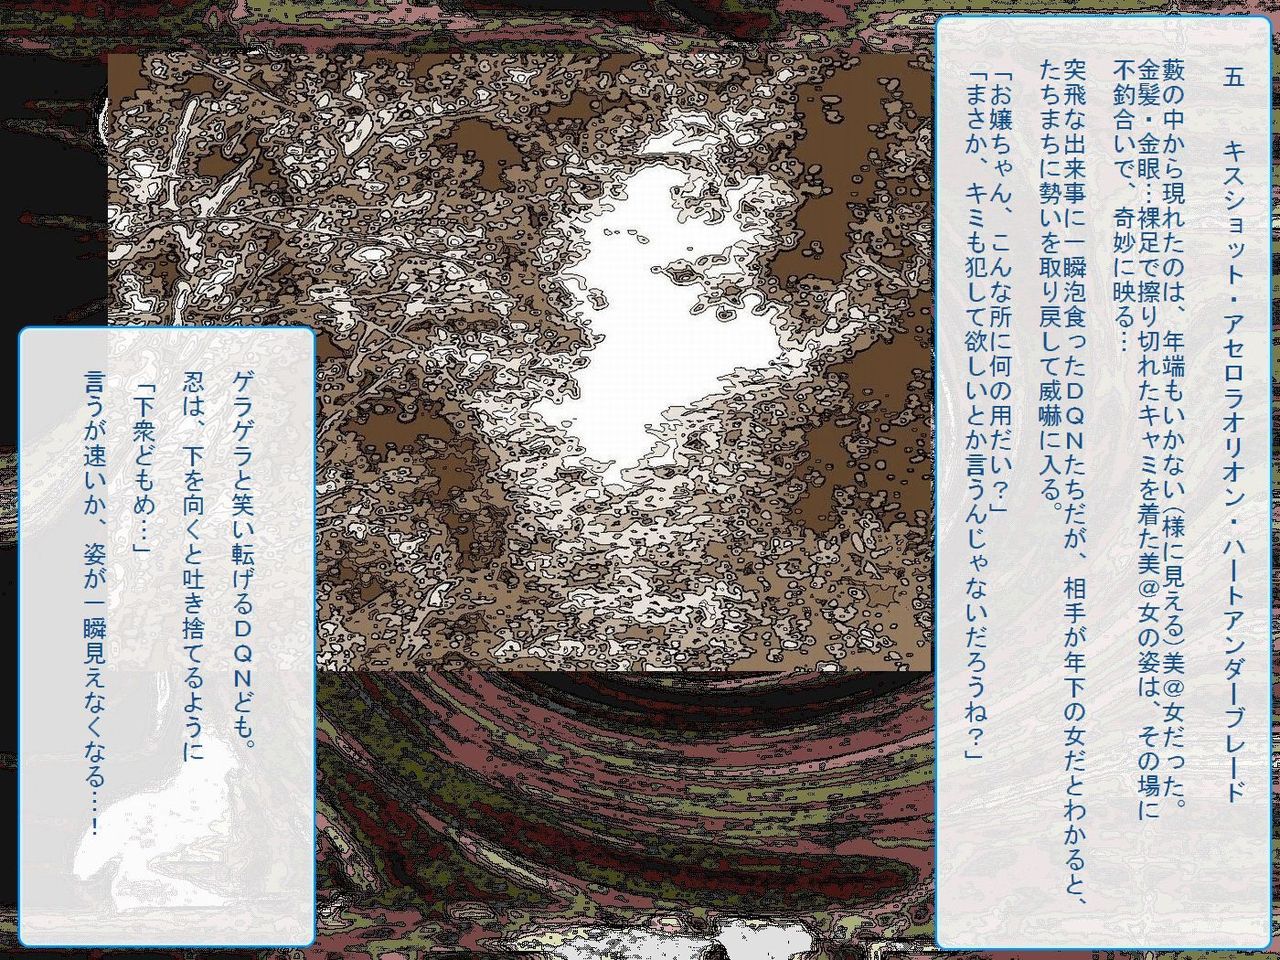 [Teito Bouei Ryodan] RTK Book Ver. 8.4: “‘Tsuki’ Monogatari Saishuu-banashi ‘Tsubasa, soshite... Mayoi maimai’” (<Monogatari> Series) [帝都防衛旅団] RTKBOOK Ver.8.4 「『憑き』物語 最終話 『ひ〇ぎ倶楽部』」 (〈物語〉シリーズ) 63